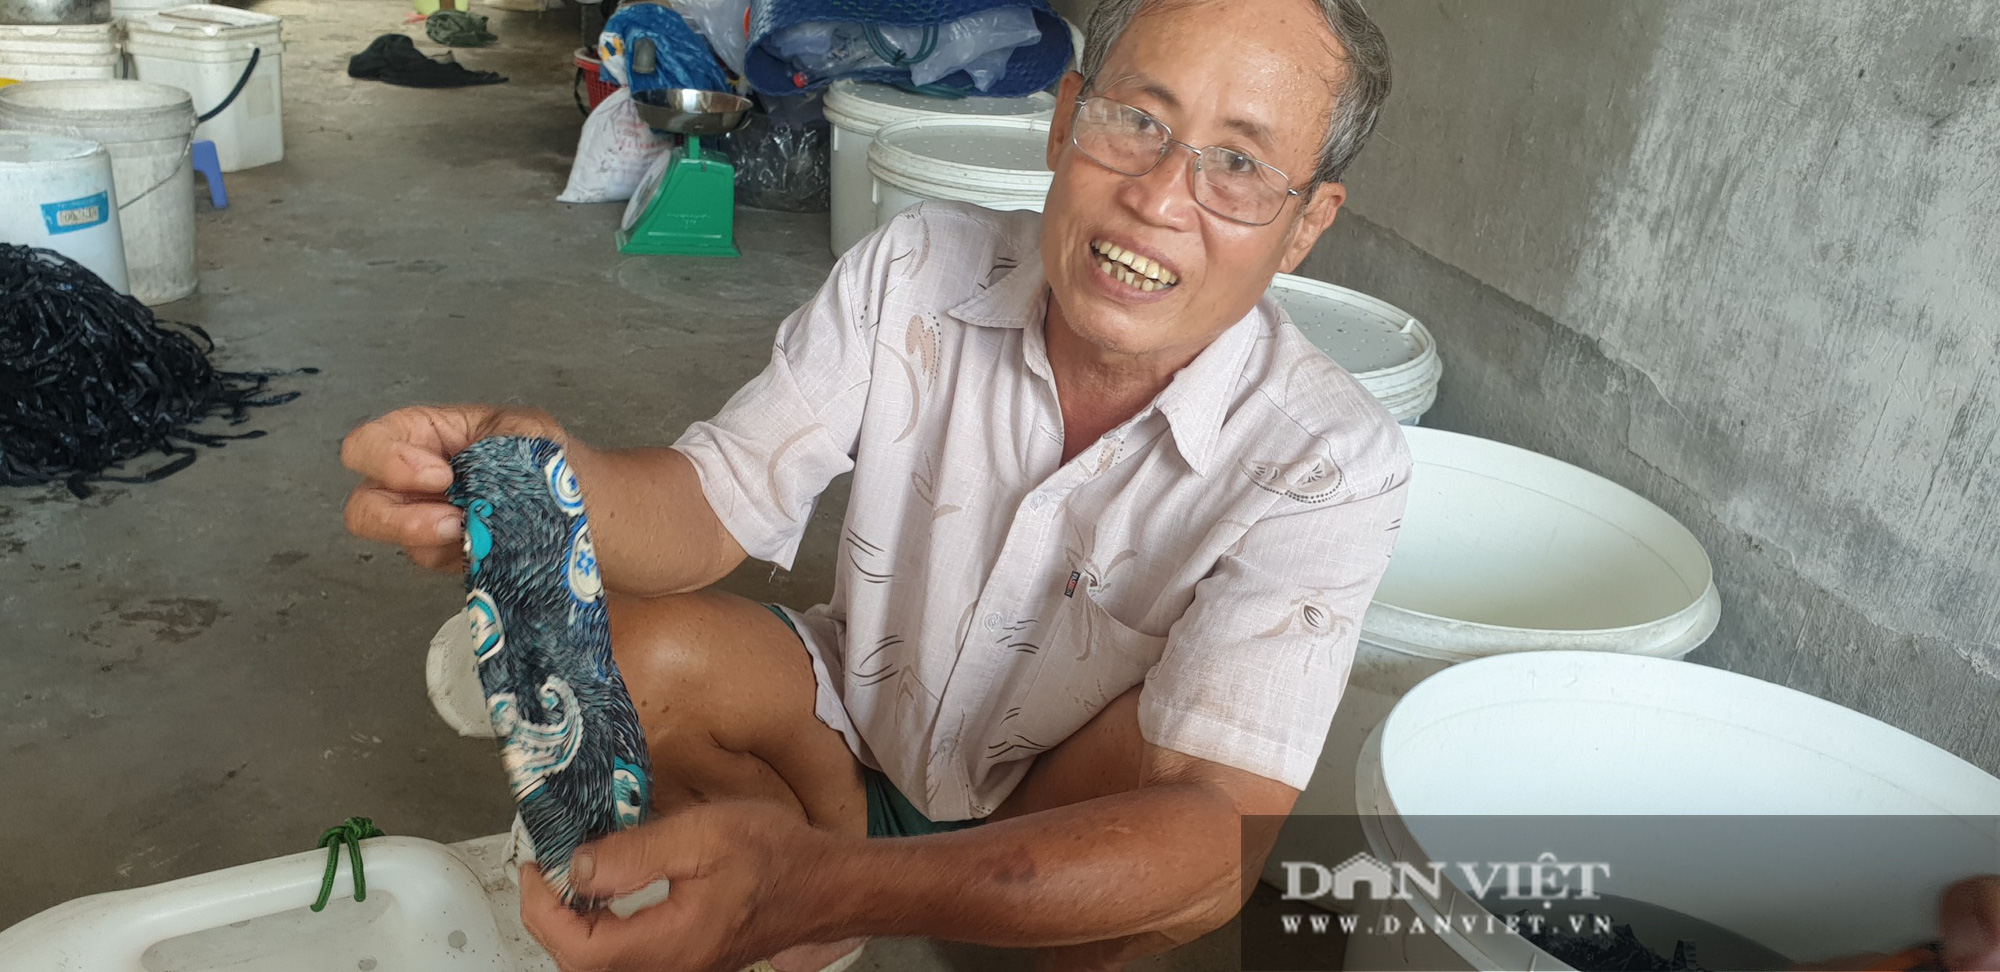 Lão nông nuôi lươn trong can nhựa “độc” nhất miền Tây: Chỉ tuyệt chiêu dưỡng lươn đồng bị chích điện không bị chết - Ảnh 4.